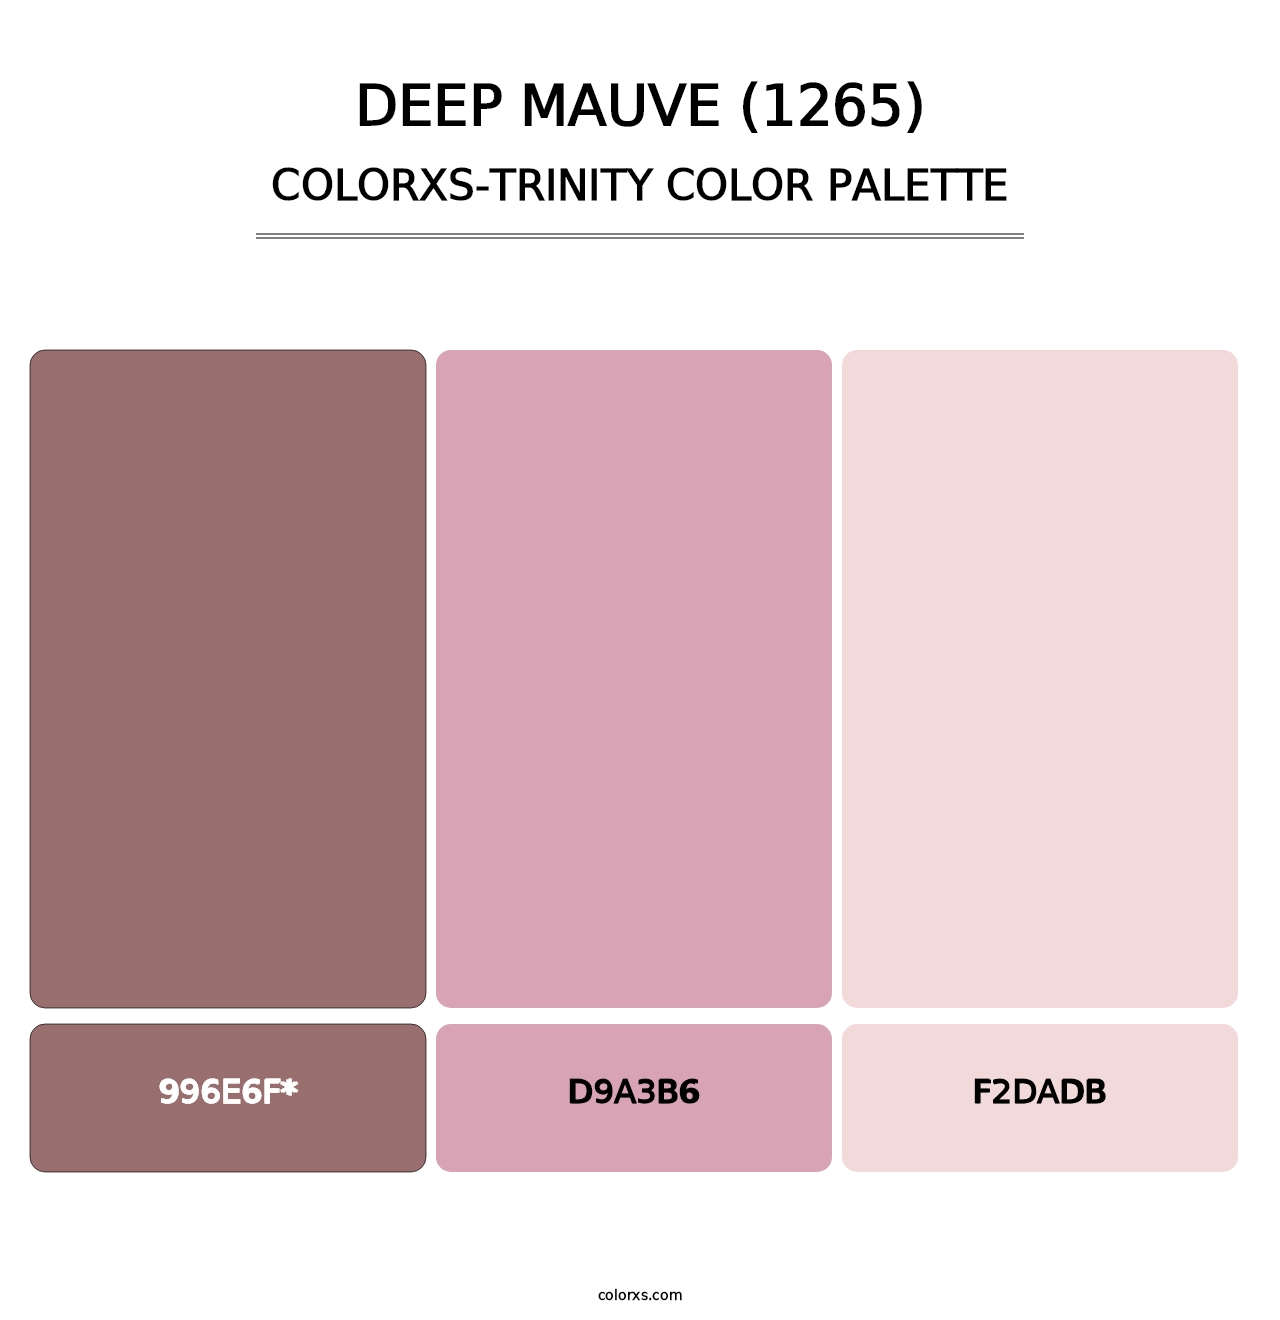 Deep Mauve (1265) - Colorxs Trinity Palette